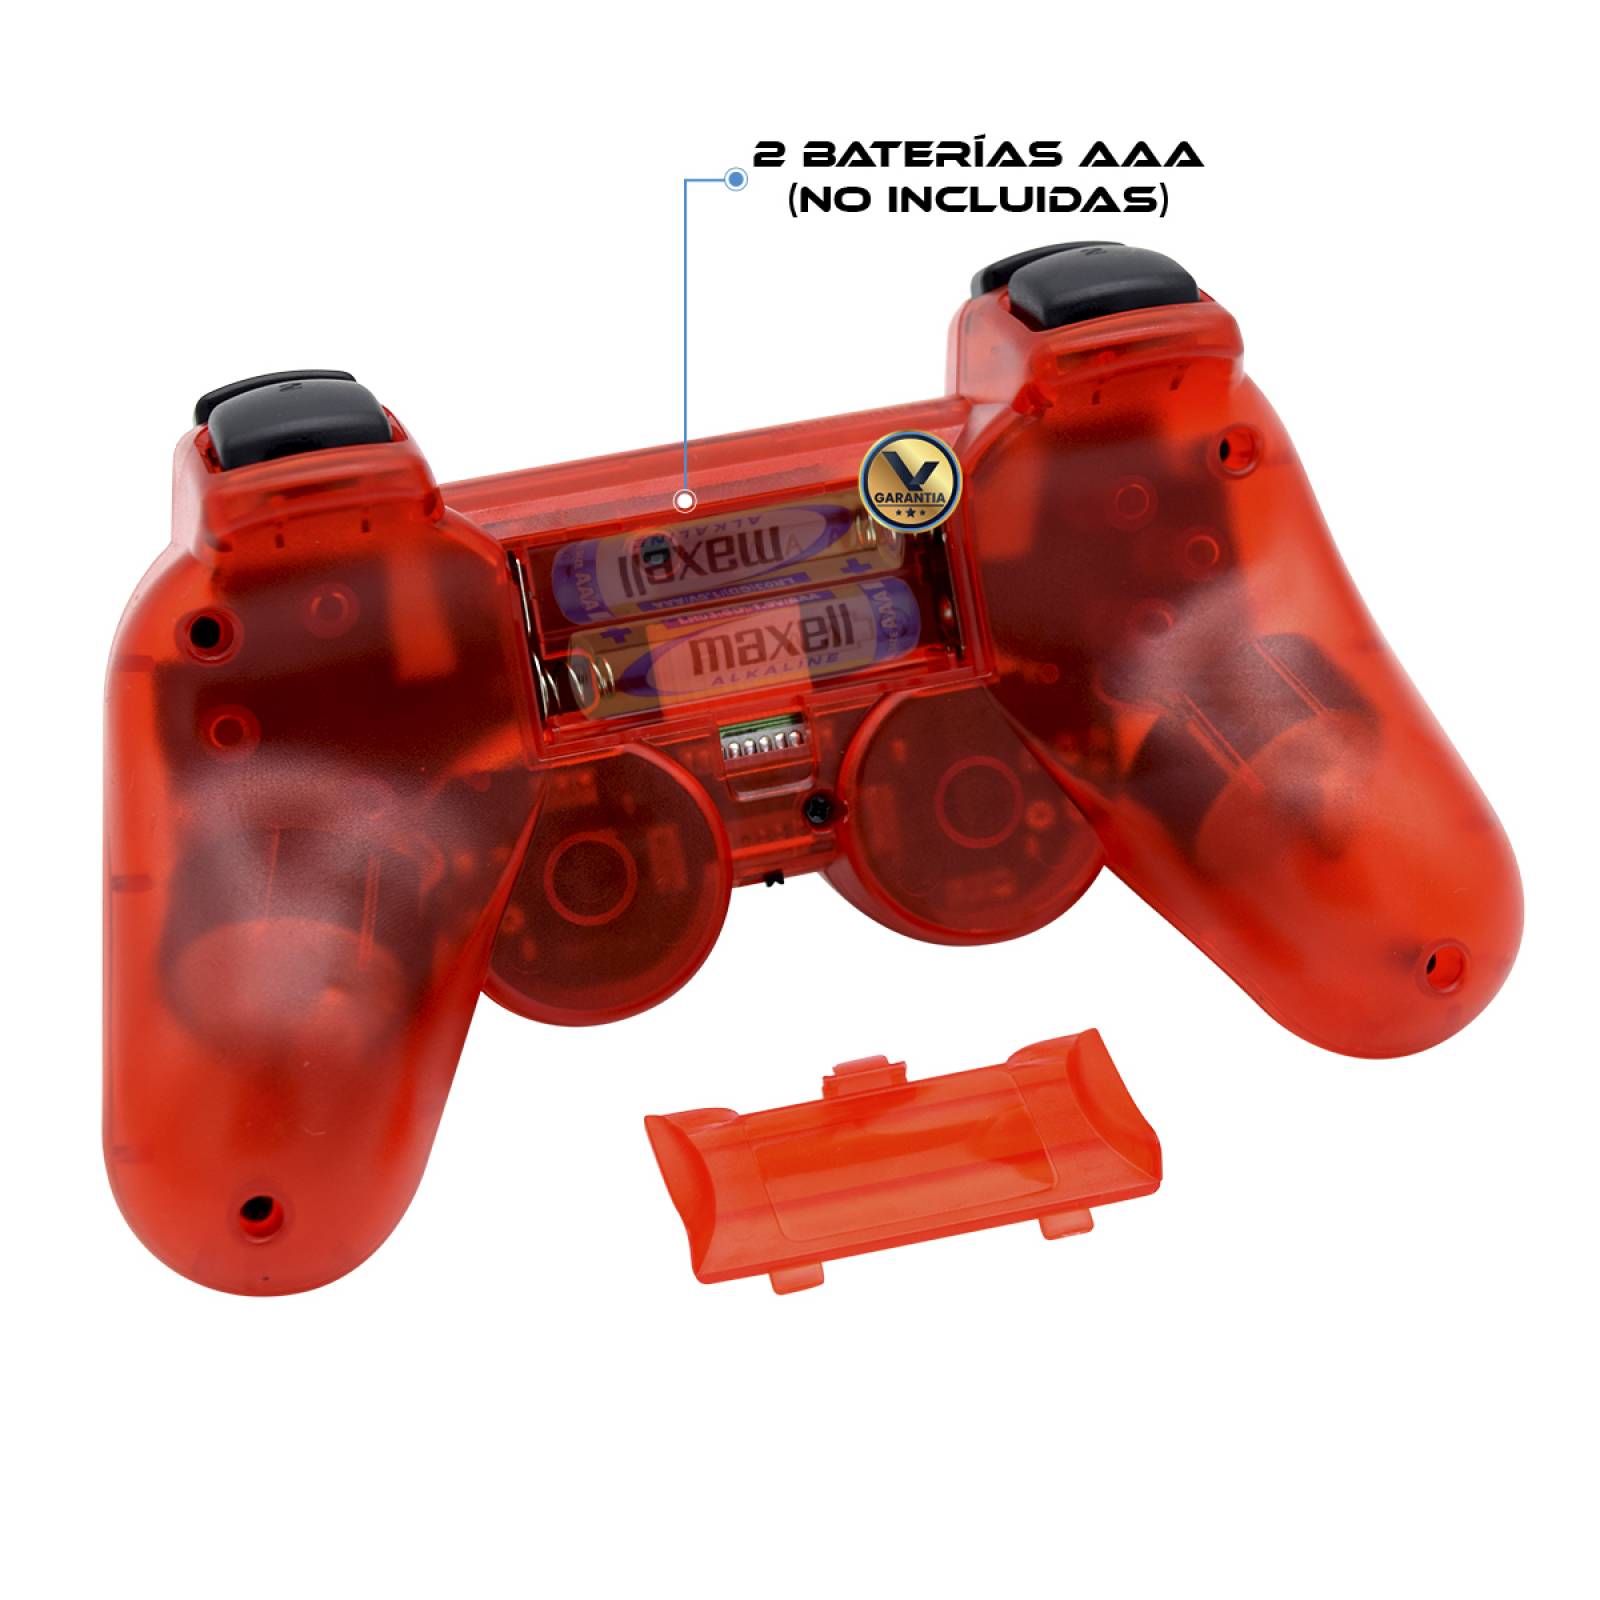 Control Inalámbrico Compatible con PS3 (PlayStation 3) Virtual